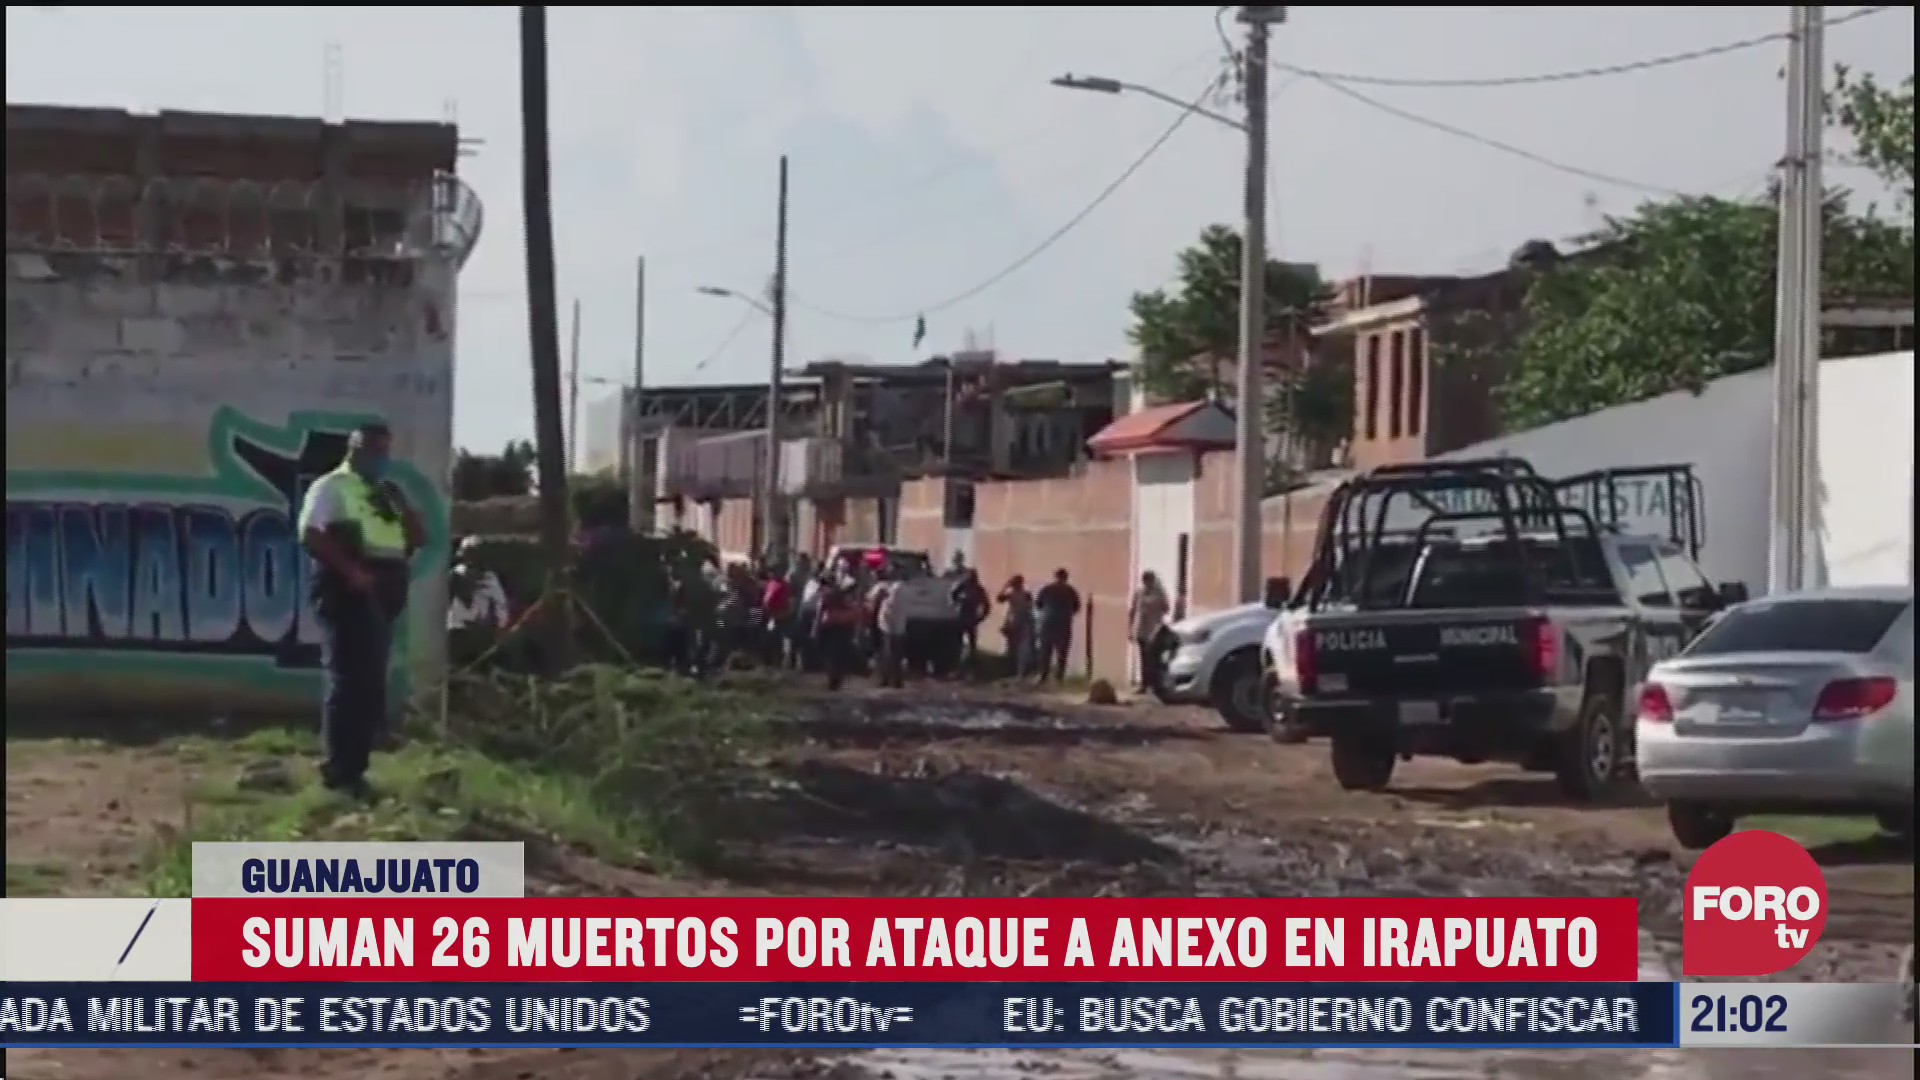 anexo o centra de reahabilitación atacado en Irapuato Guanajuato